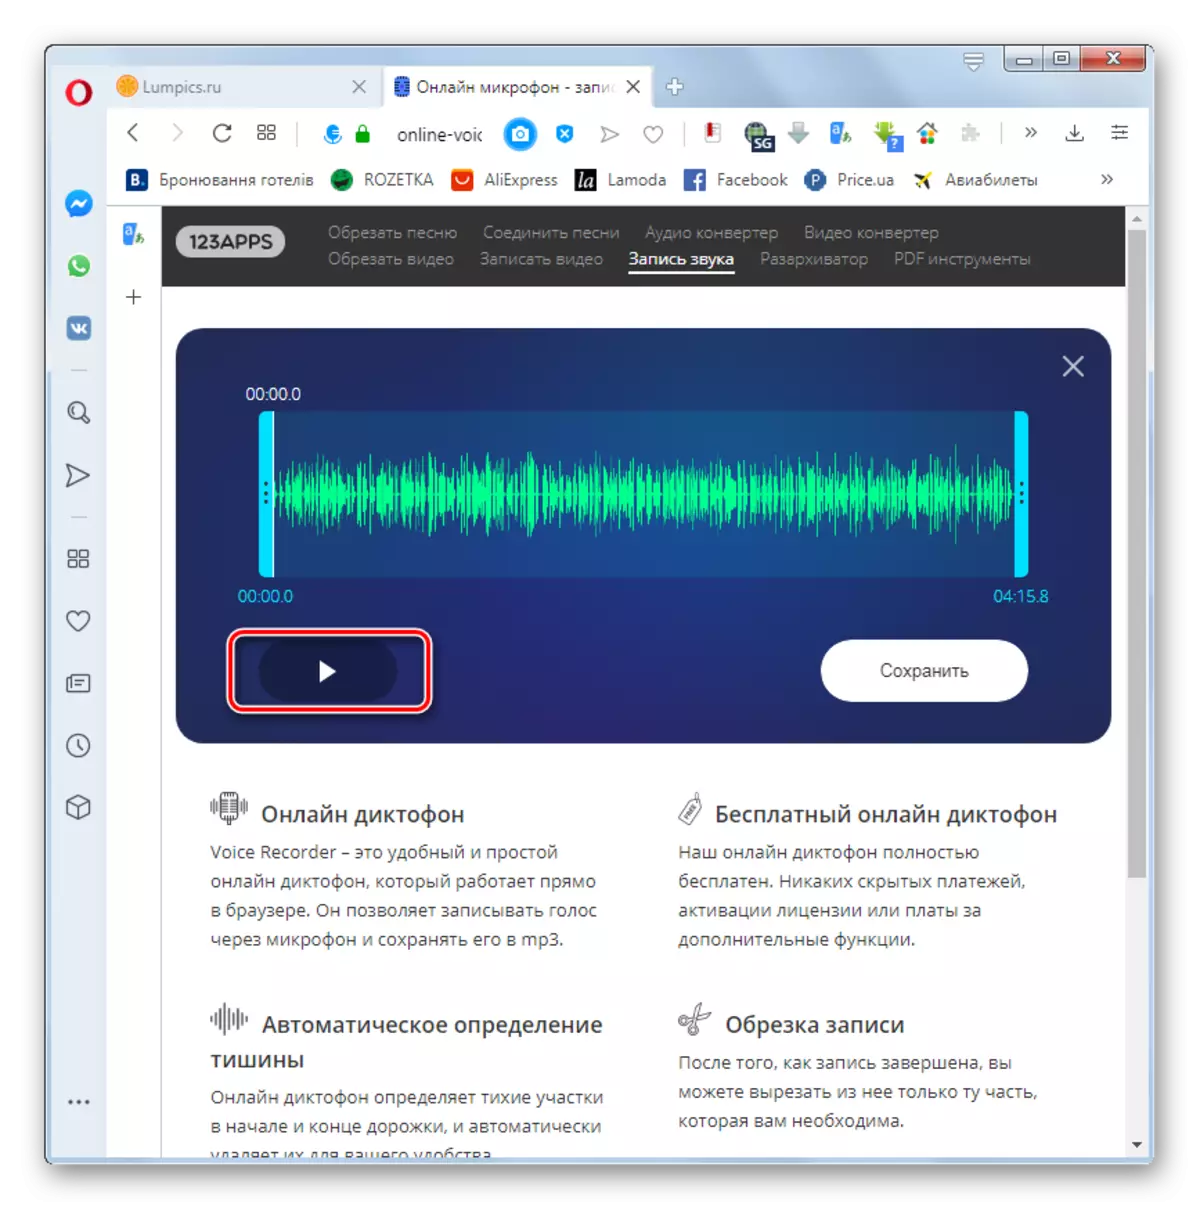 Zaženite predvajanje posnetega glasu v spletni strani spletnega zvoka v brskalniku Opera